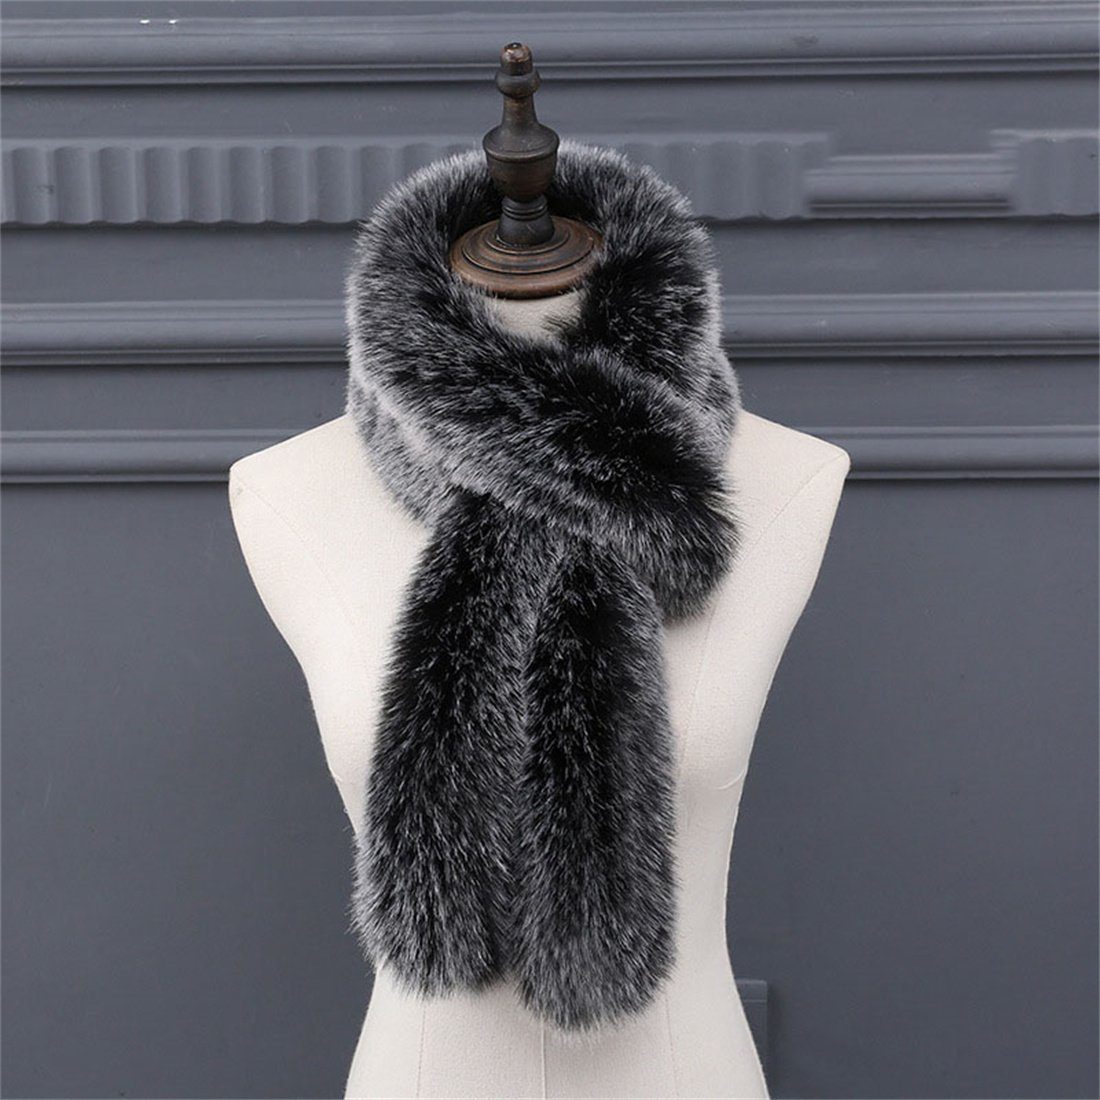 DÖRÖY Modeschal Damen Mode verdickt Nachahmung Pelz Schal, Winter warm Kunstpelz Schal Schwarz und Weiß